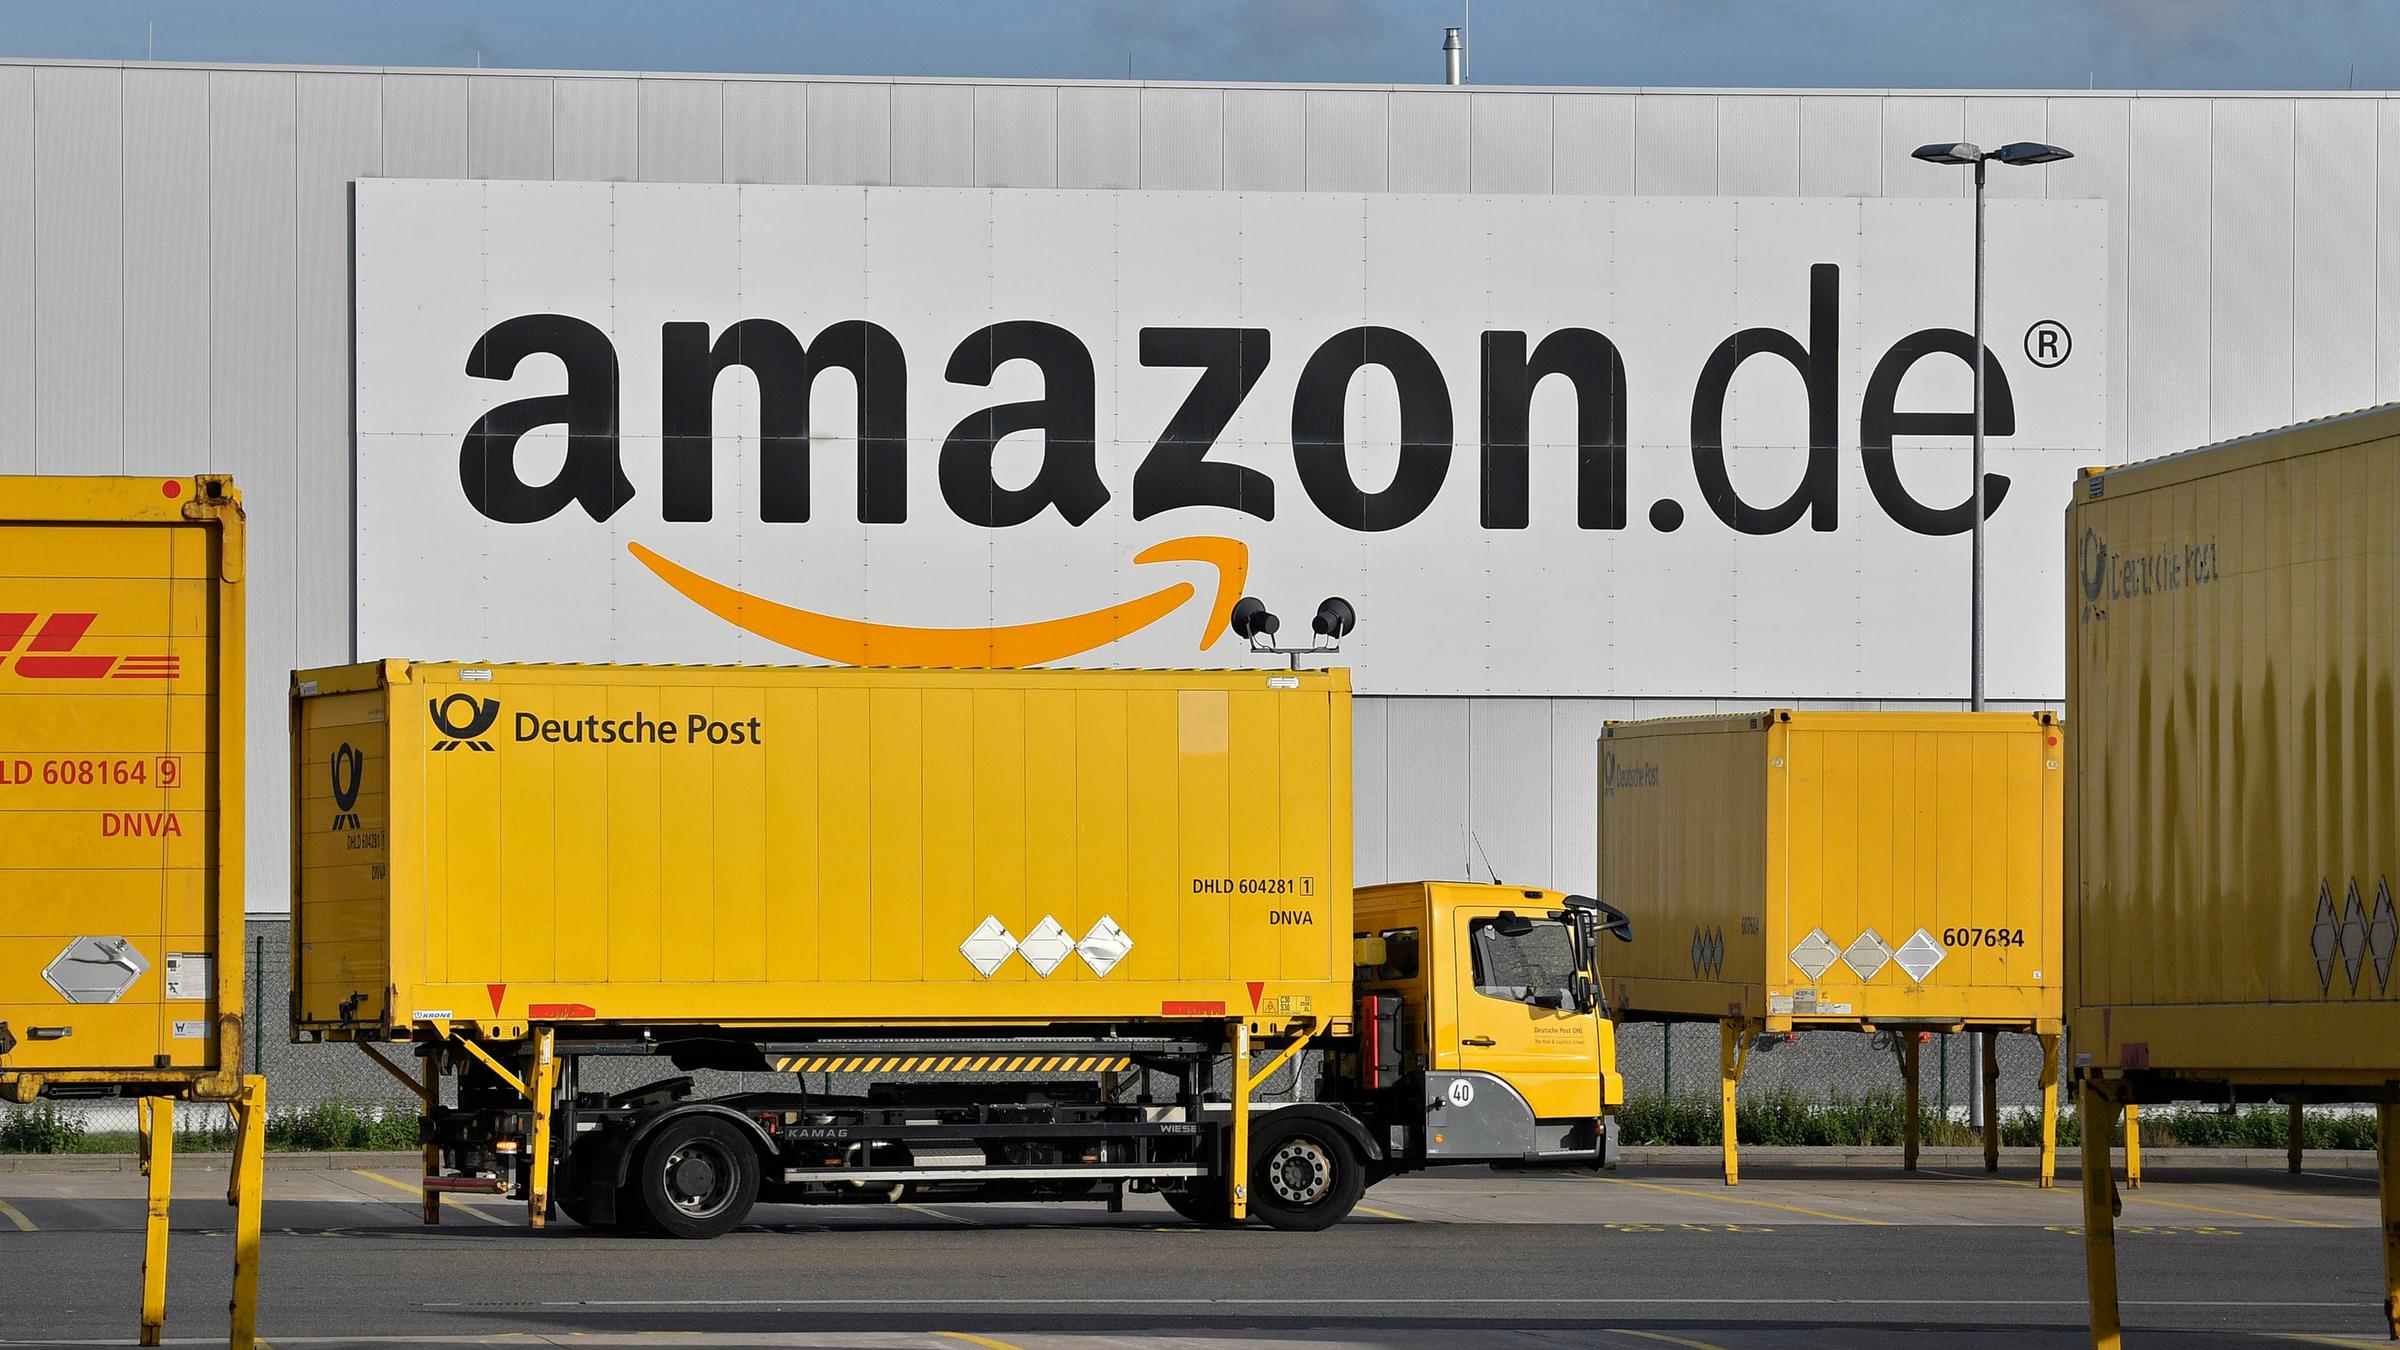 Ein Lastwagen steht vor einer Lagerhalle mit der Aufschrift "amazon.de".